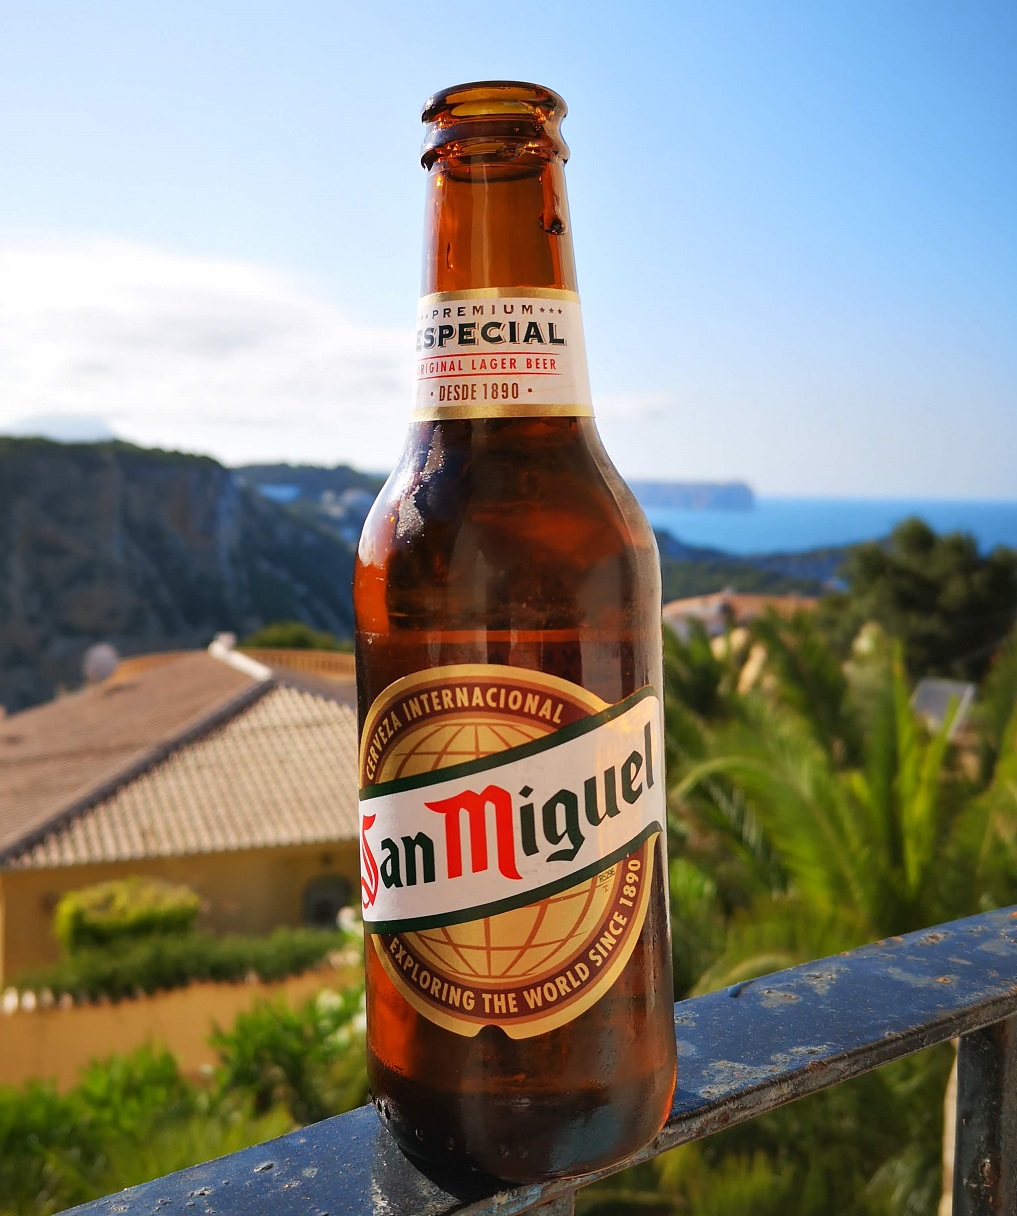 Kann man sicher auch aus der Flasche trinken: San Miguel